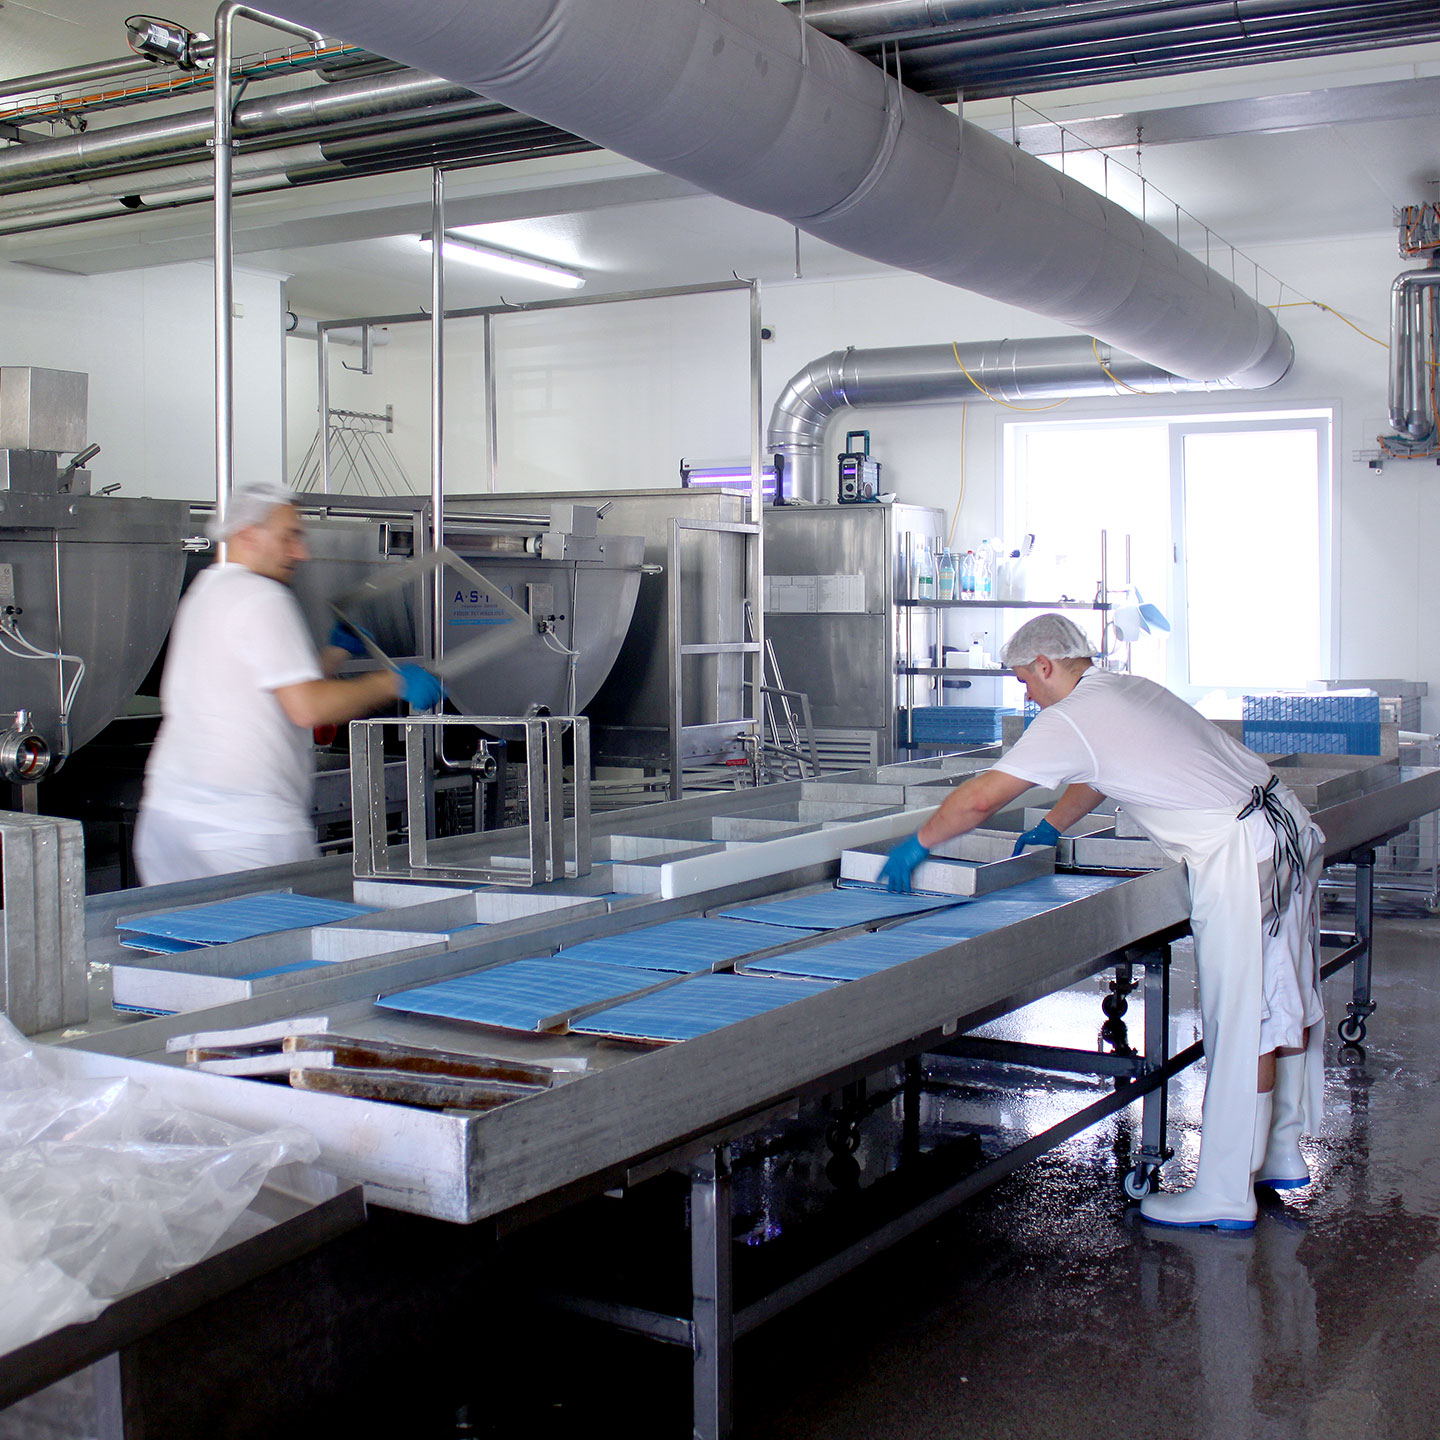 Durchflussgeräte zur UVC-Desinfektion und UVC-Umluftentkeimer sorgen für hygienische Reinheit bei der Käse-Produktion im Käsekeller